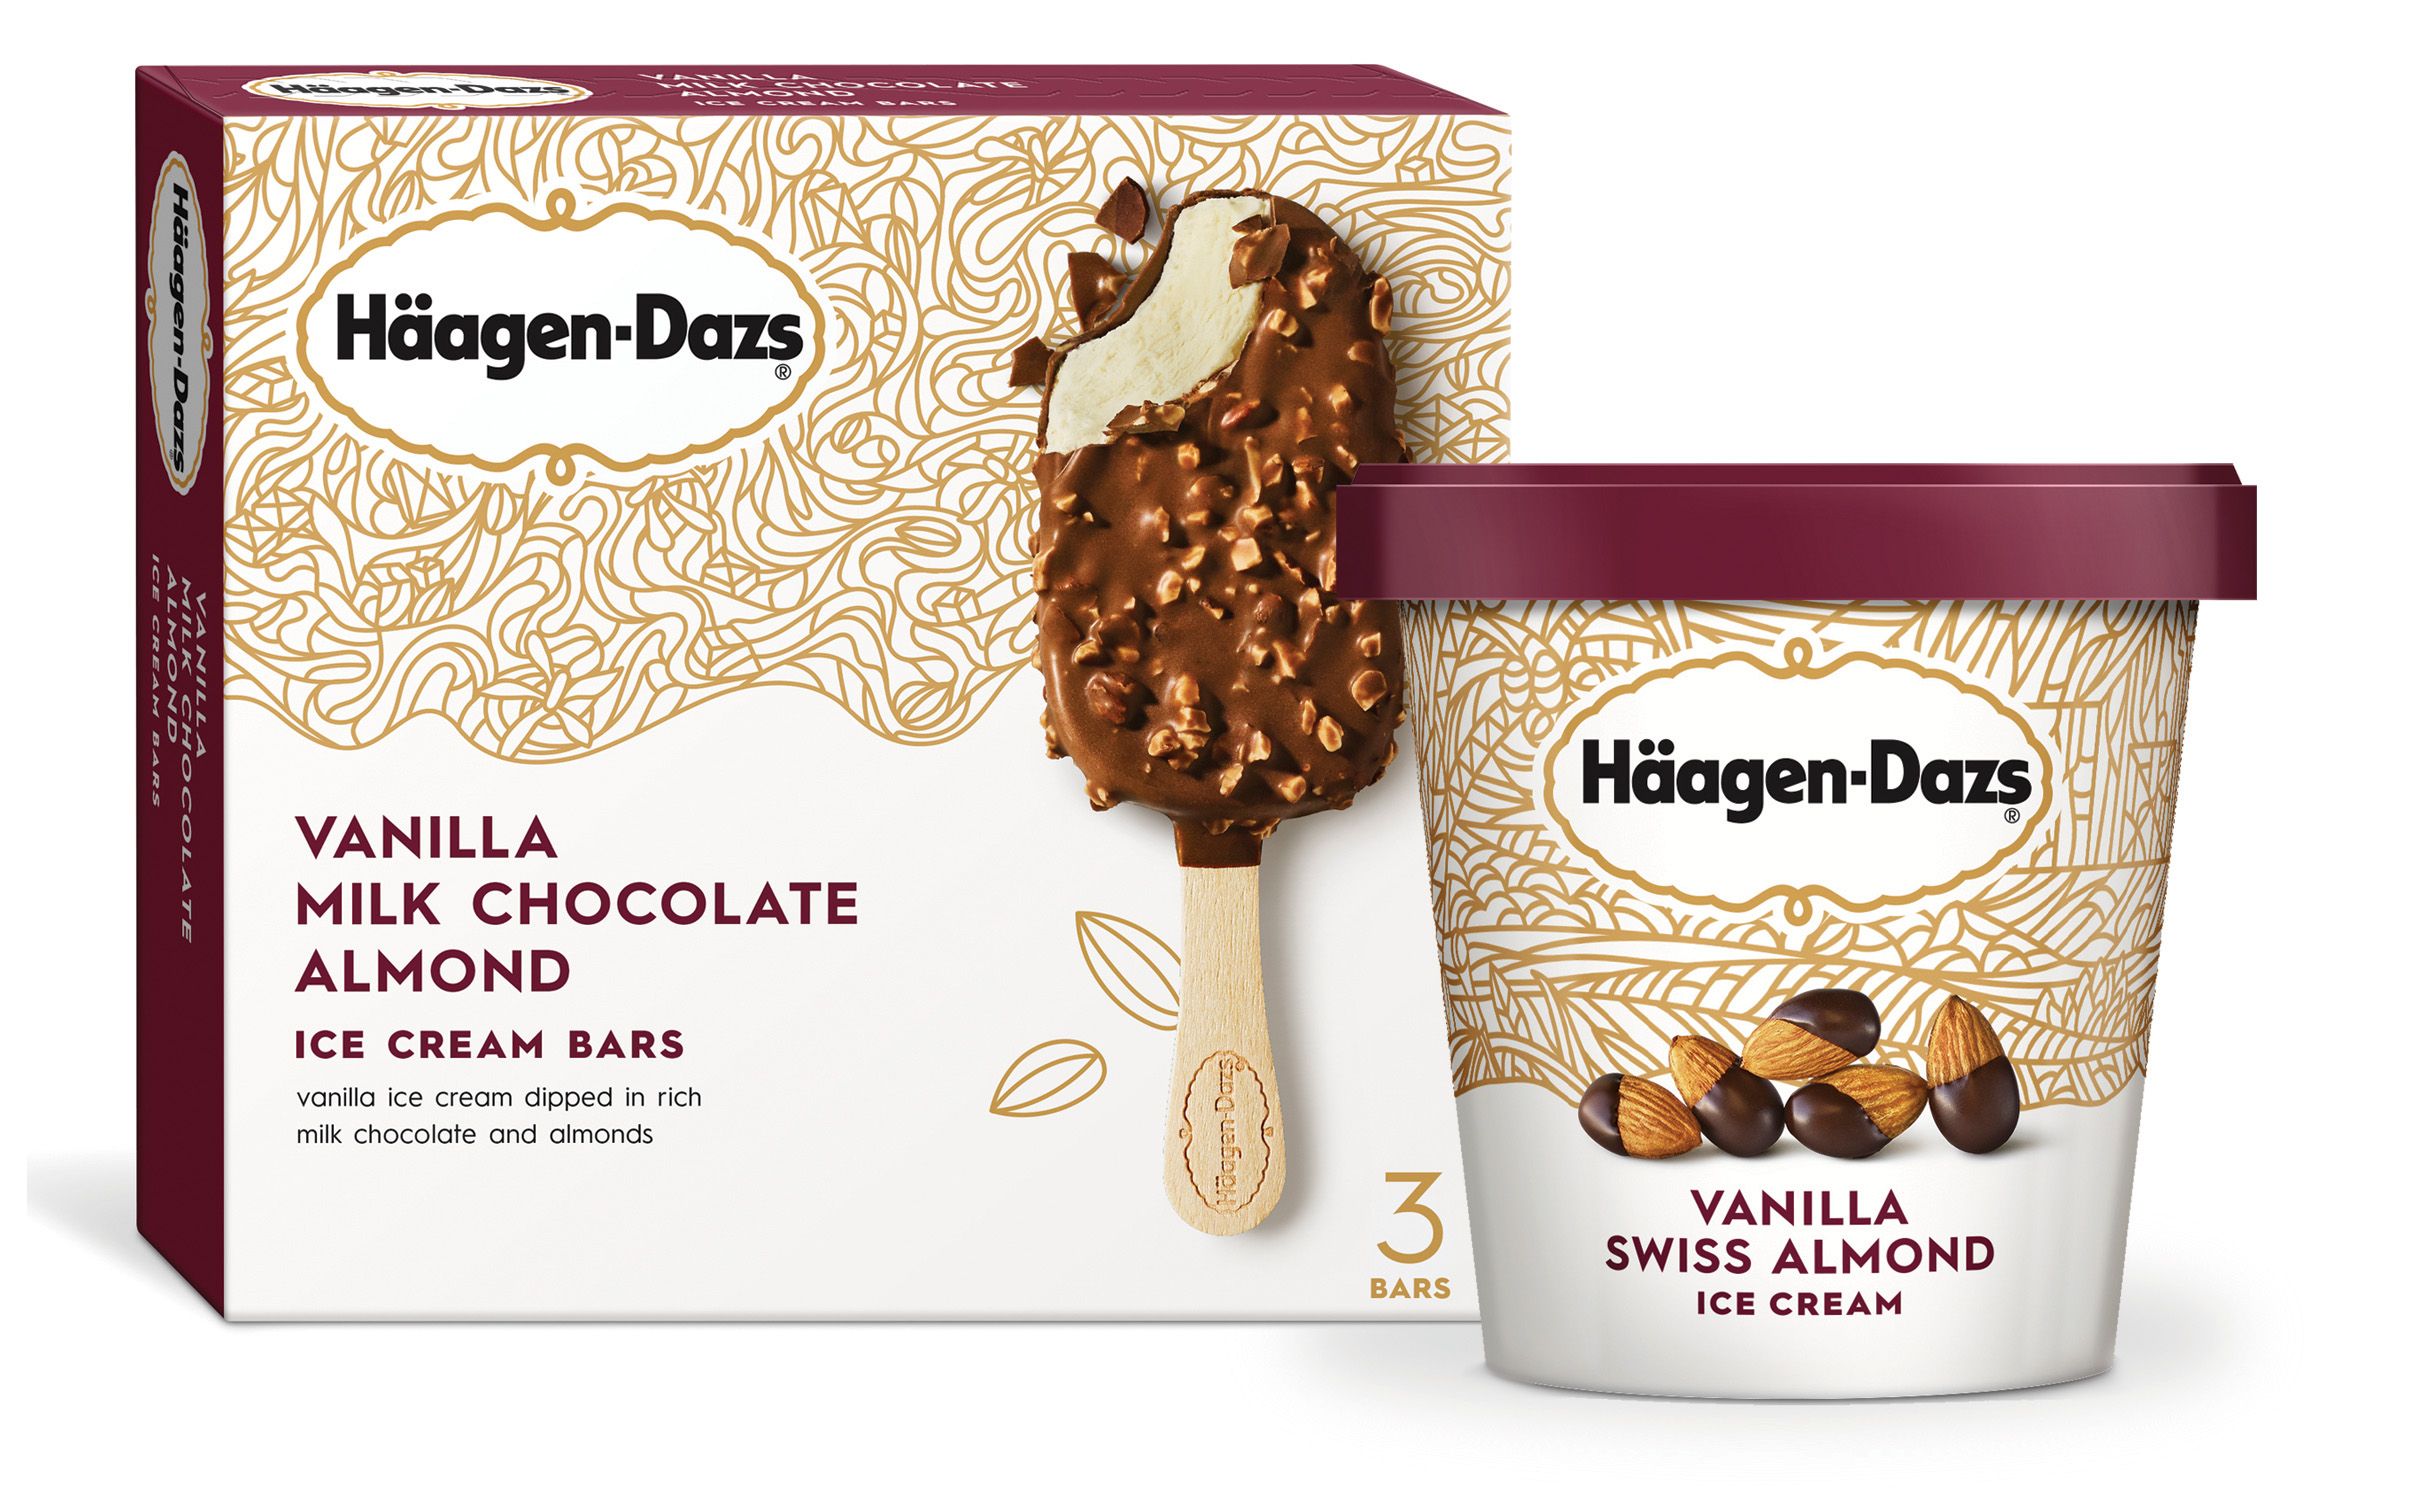 Häagen-Dazs Vanilla Milk Chocolate Almond Bars and Vanilla Swiss Almond Ice Cream